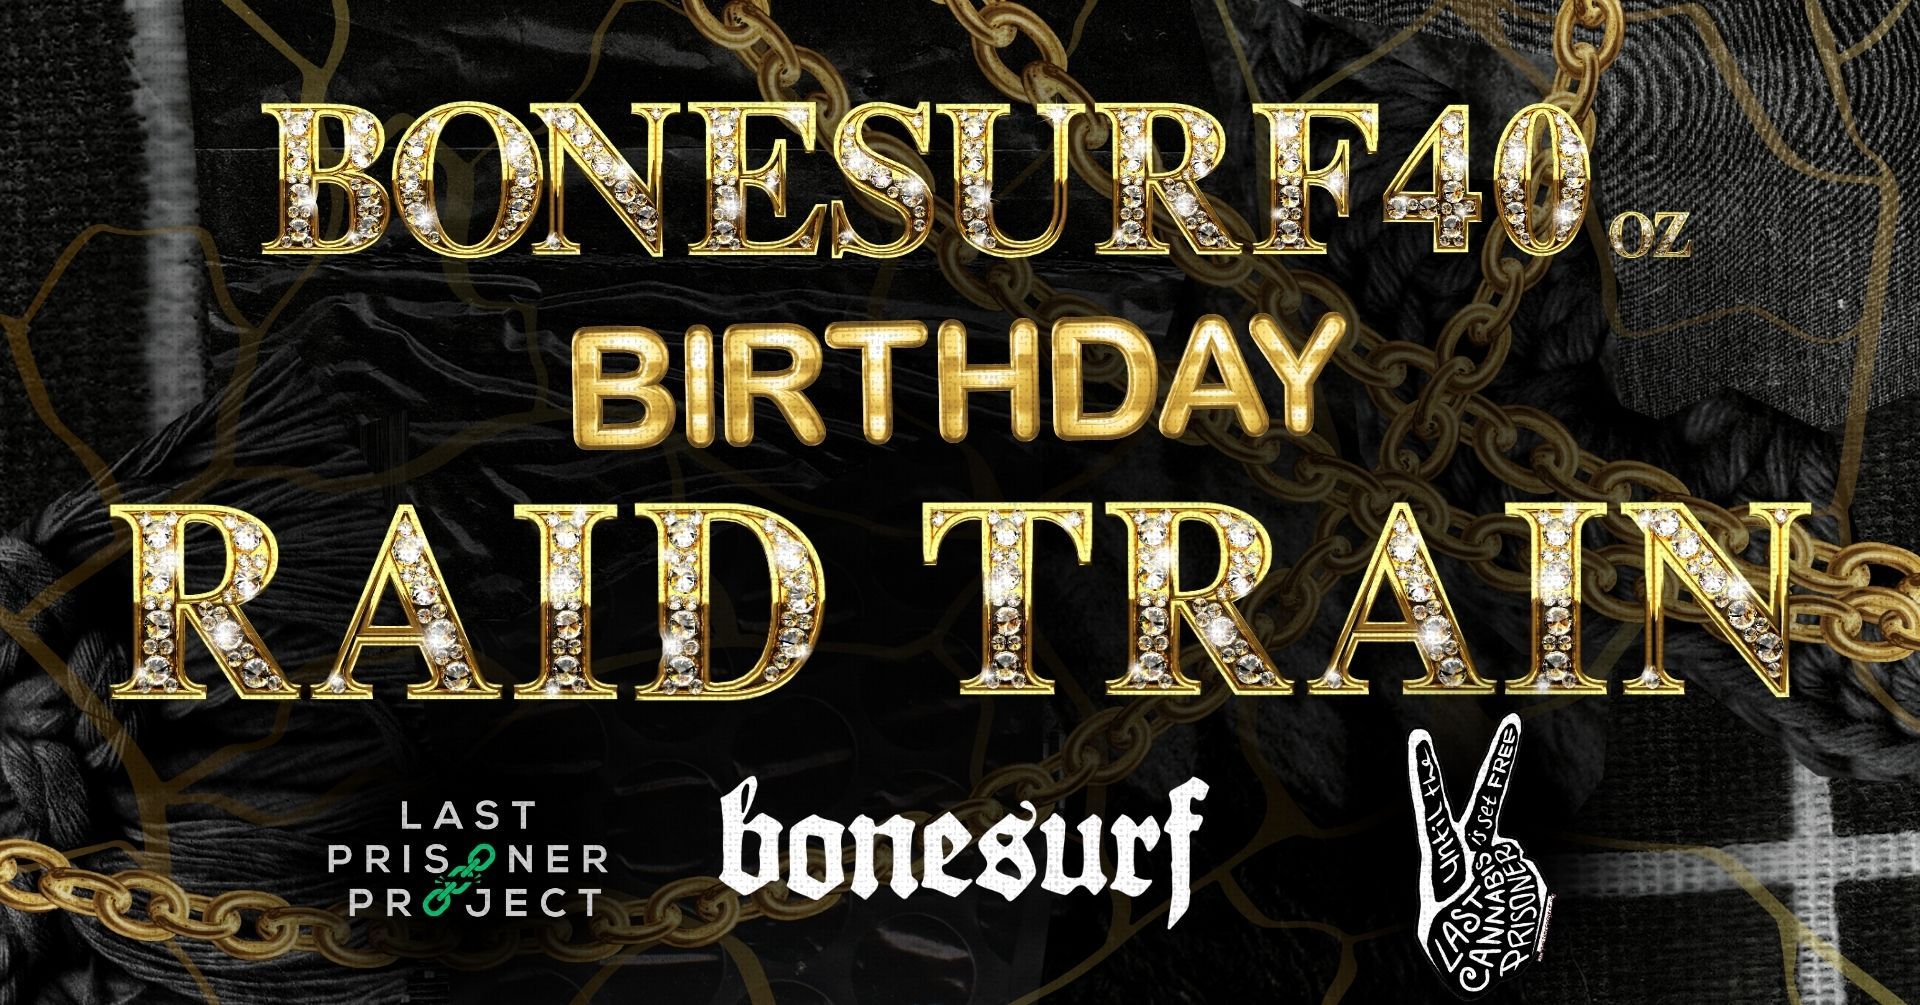 bonesurf40 - Birthday Raid Train & Fundraiser @LastPrisonerProject